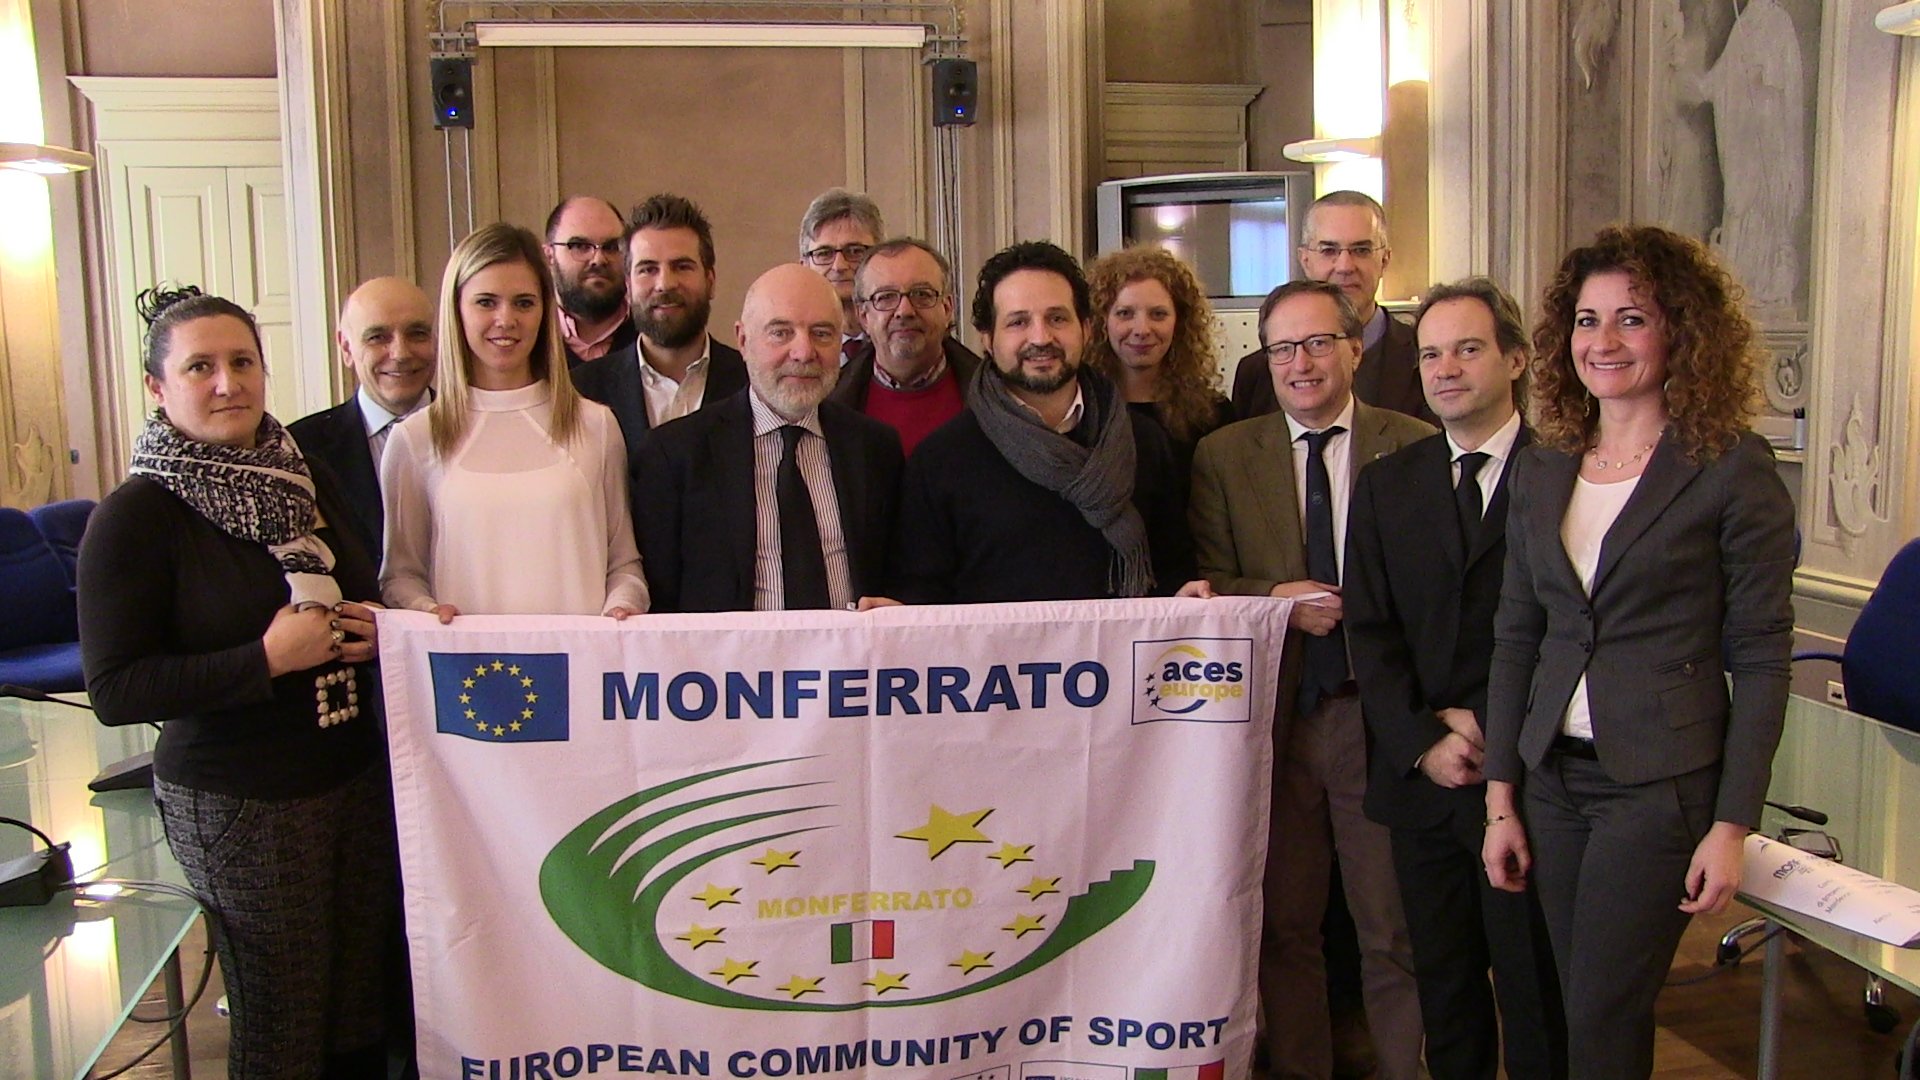 Dal Giro d’Italia ai campionati tricolori di scherma: il Monferrato si scopre unito e “Comunità dello sport”